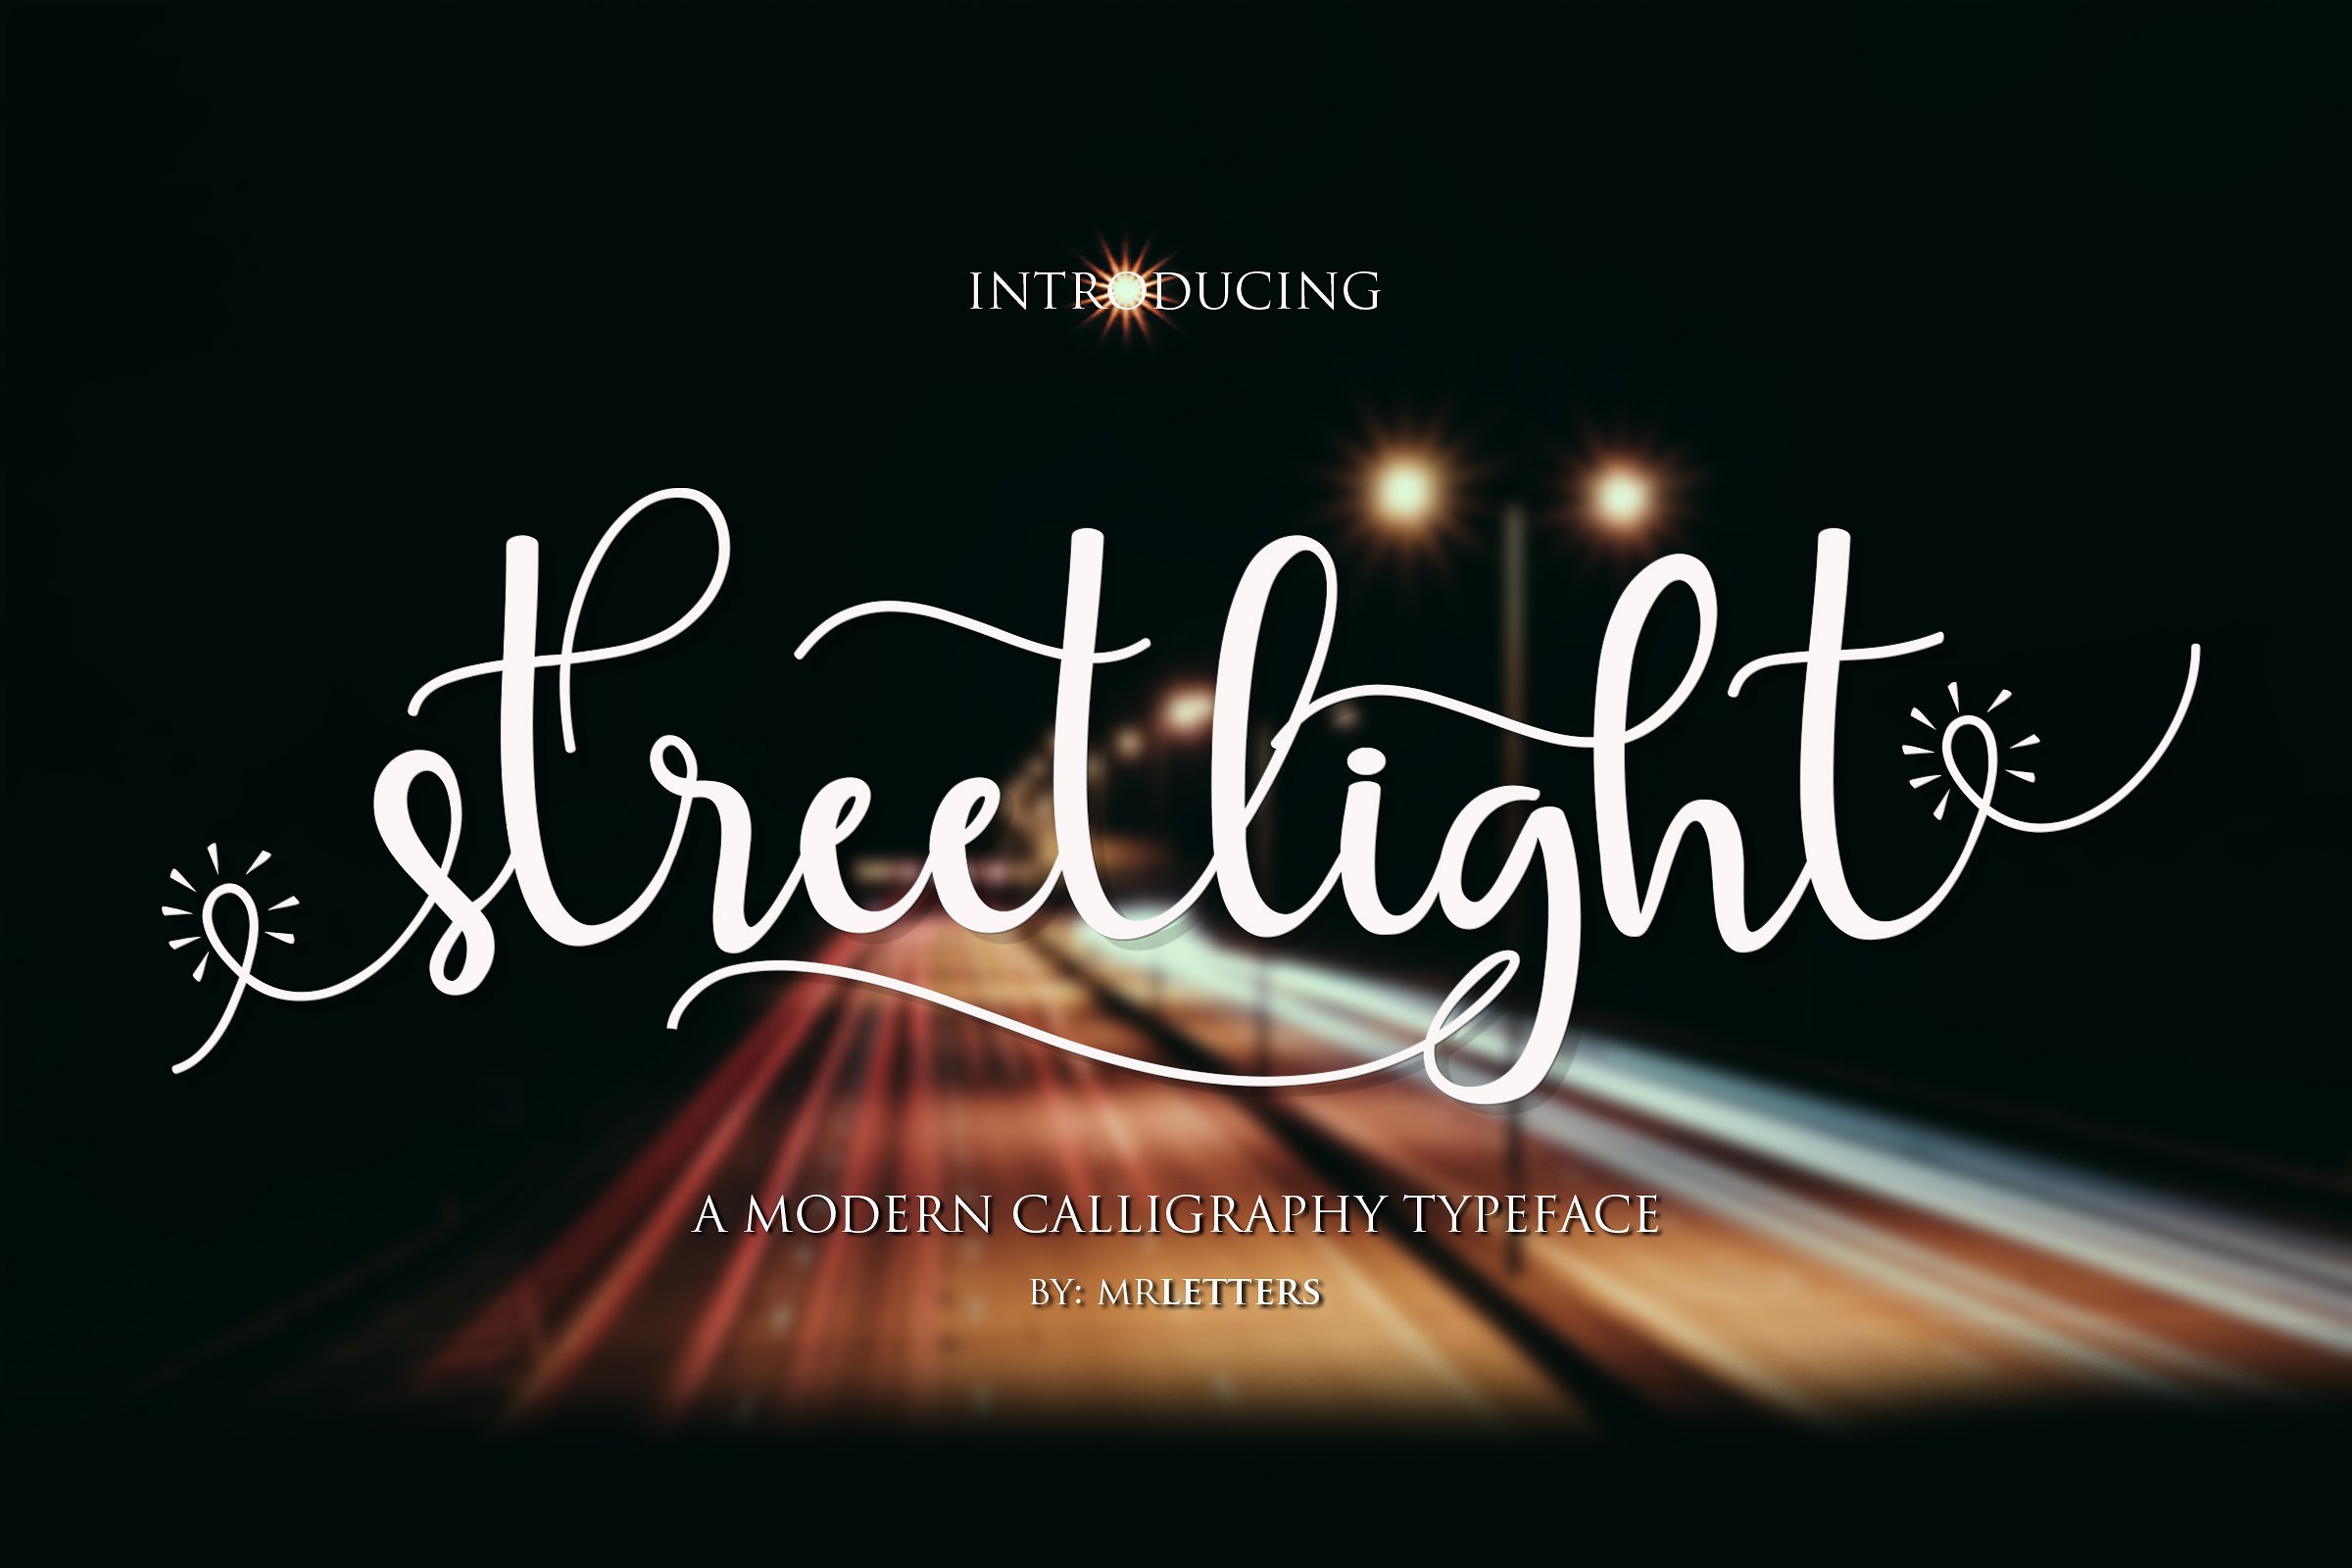 书法手写英文字体 Streetlight Script #1